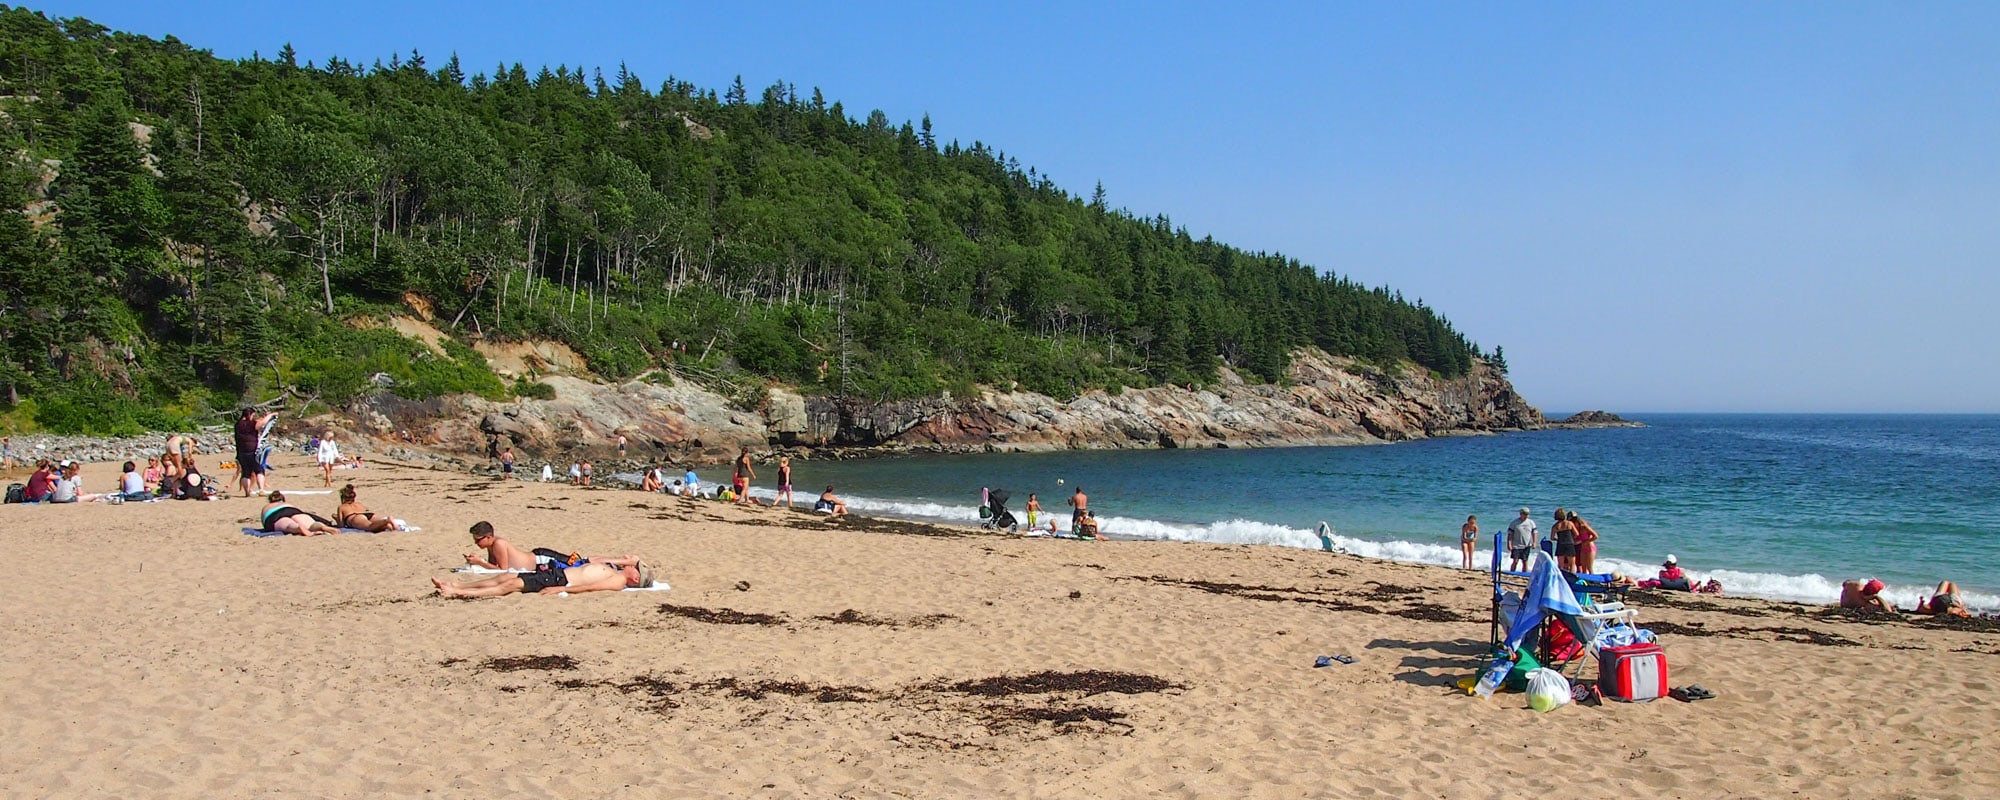 Acadia National Park, Maine - Banner Beach